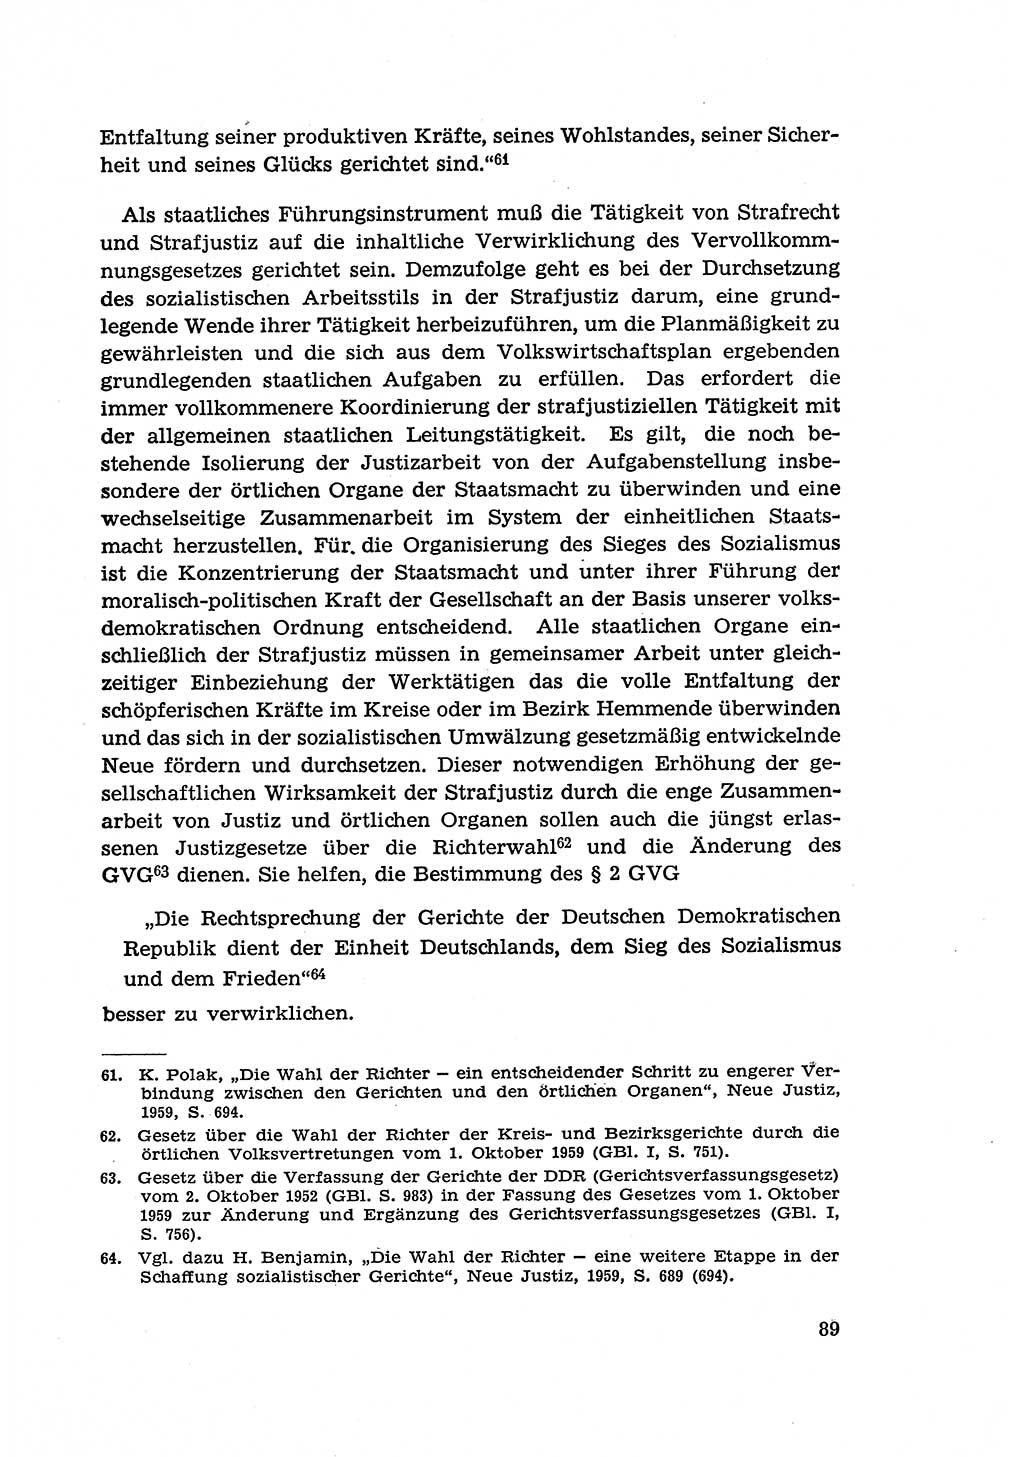 Zur Entwicklung des sozialistischen Strafrechts der Deutschen Demokratischen Republik (DDR) 1960, Seite 89 (Entw. soz. Strafr. DDR 1960, S. 89)